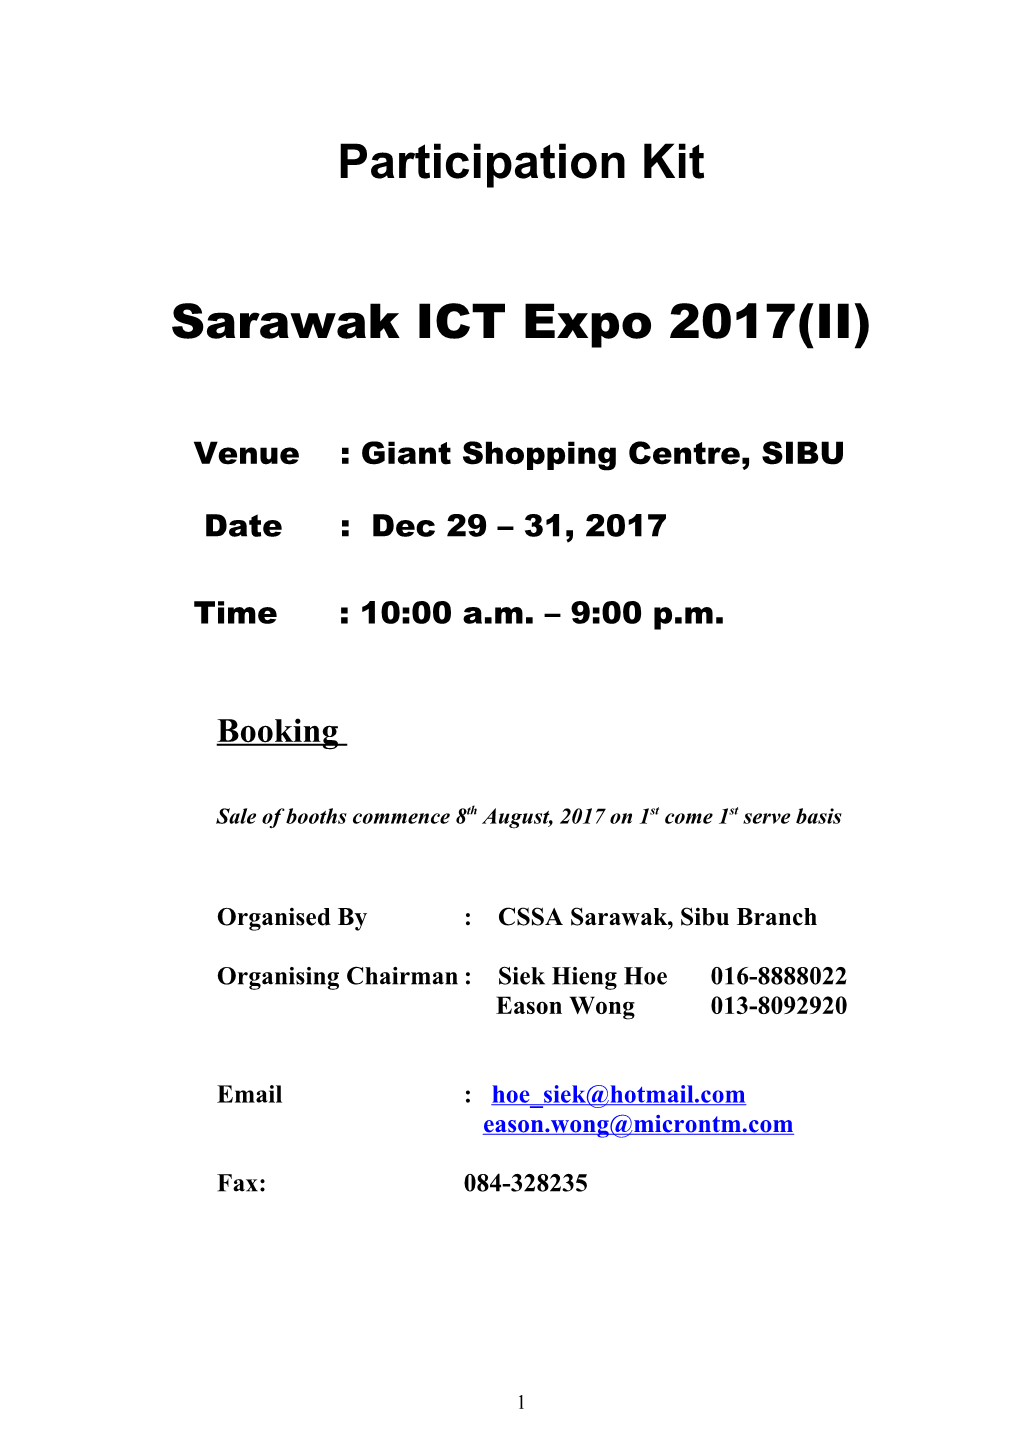 Persatuan Jualan & Perkhidmatan Komputer Sarawak, Cawangan Sibu